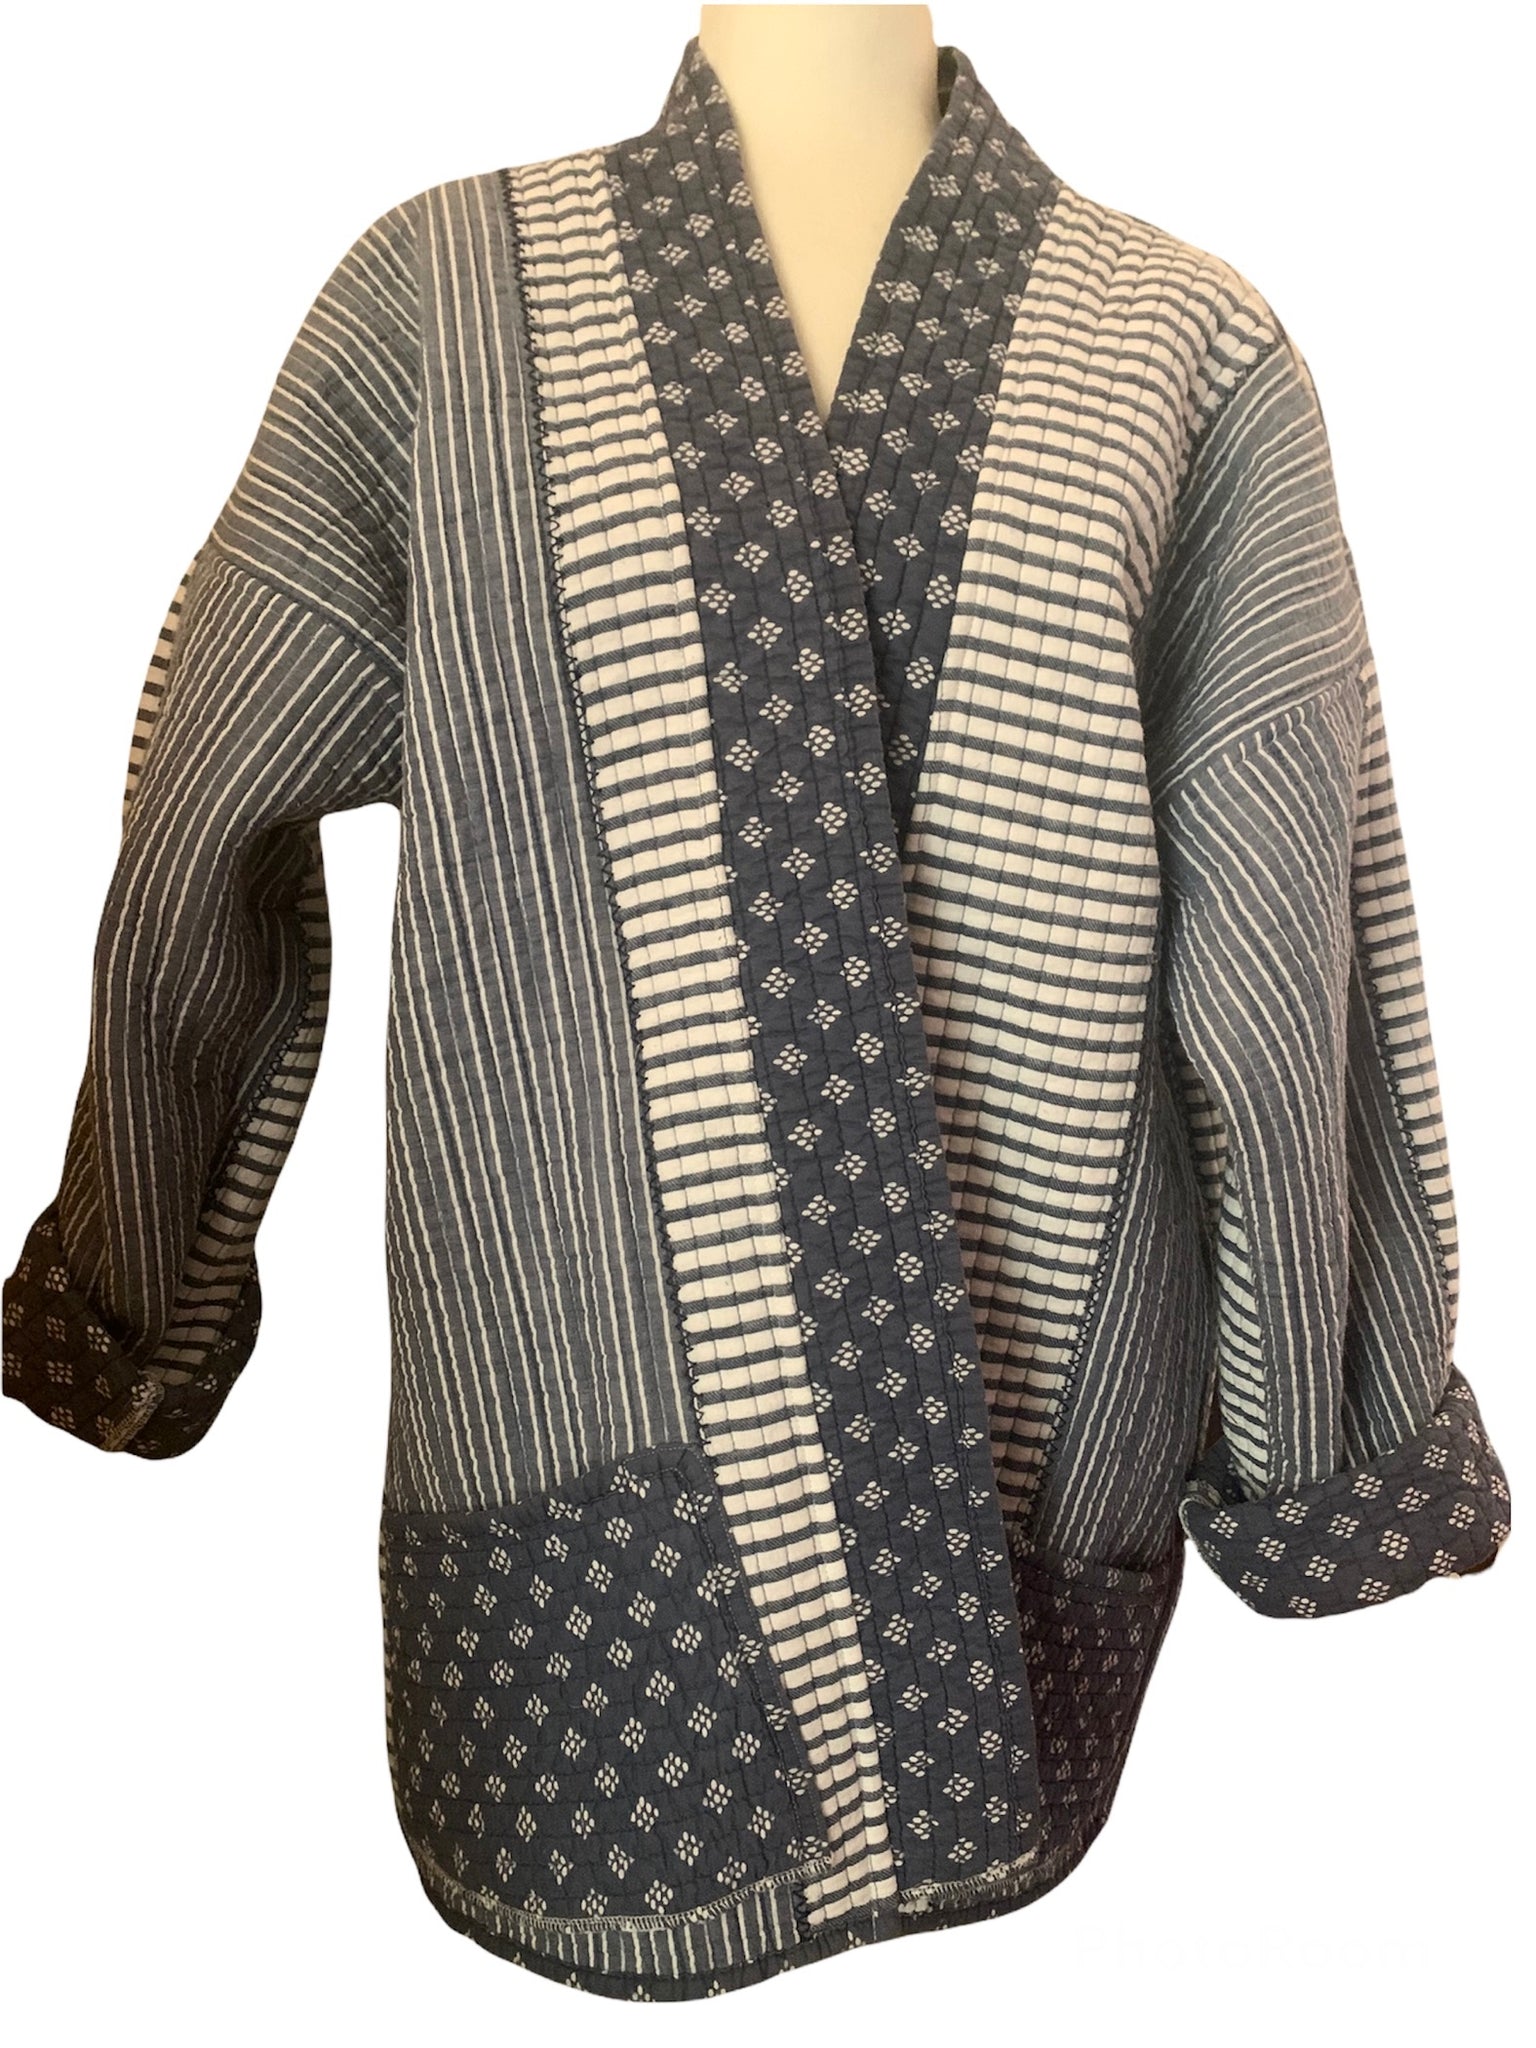 Indigo stripe Long Kimono Jacket